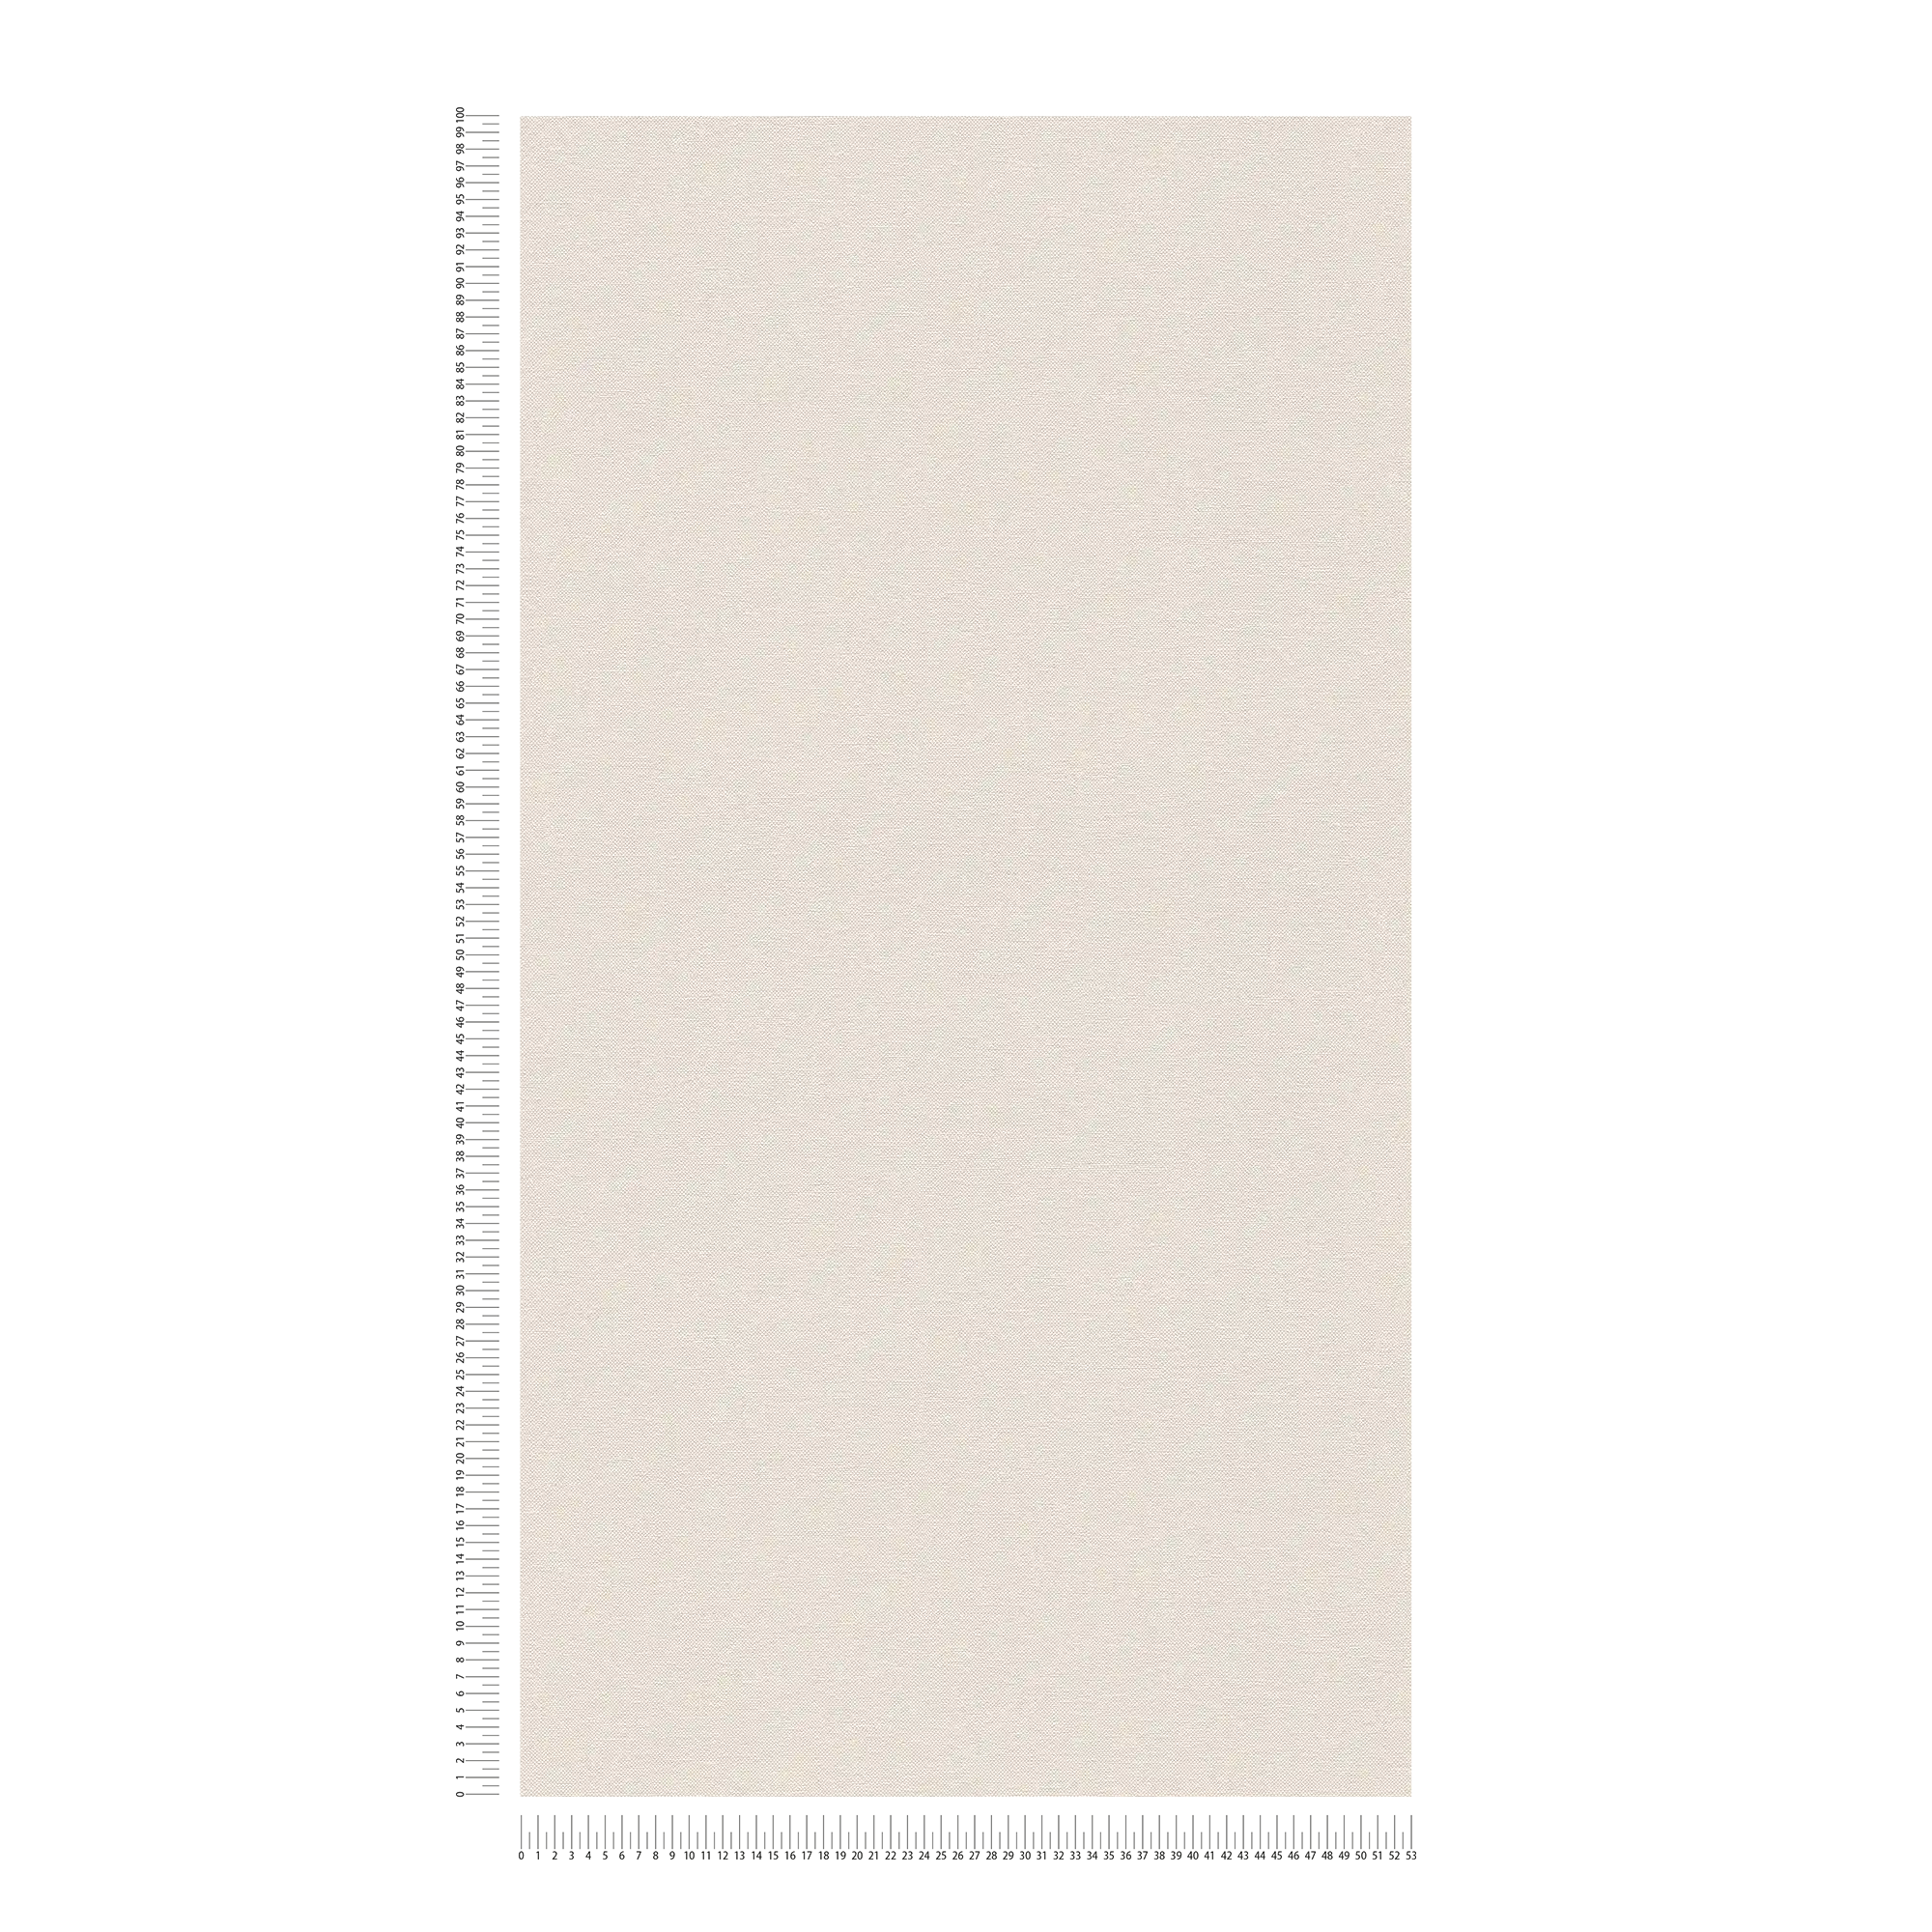             papier peint en papier uni avec structure tissée mat - blanc
        